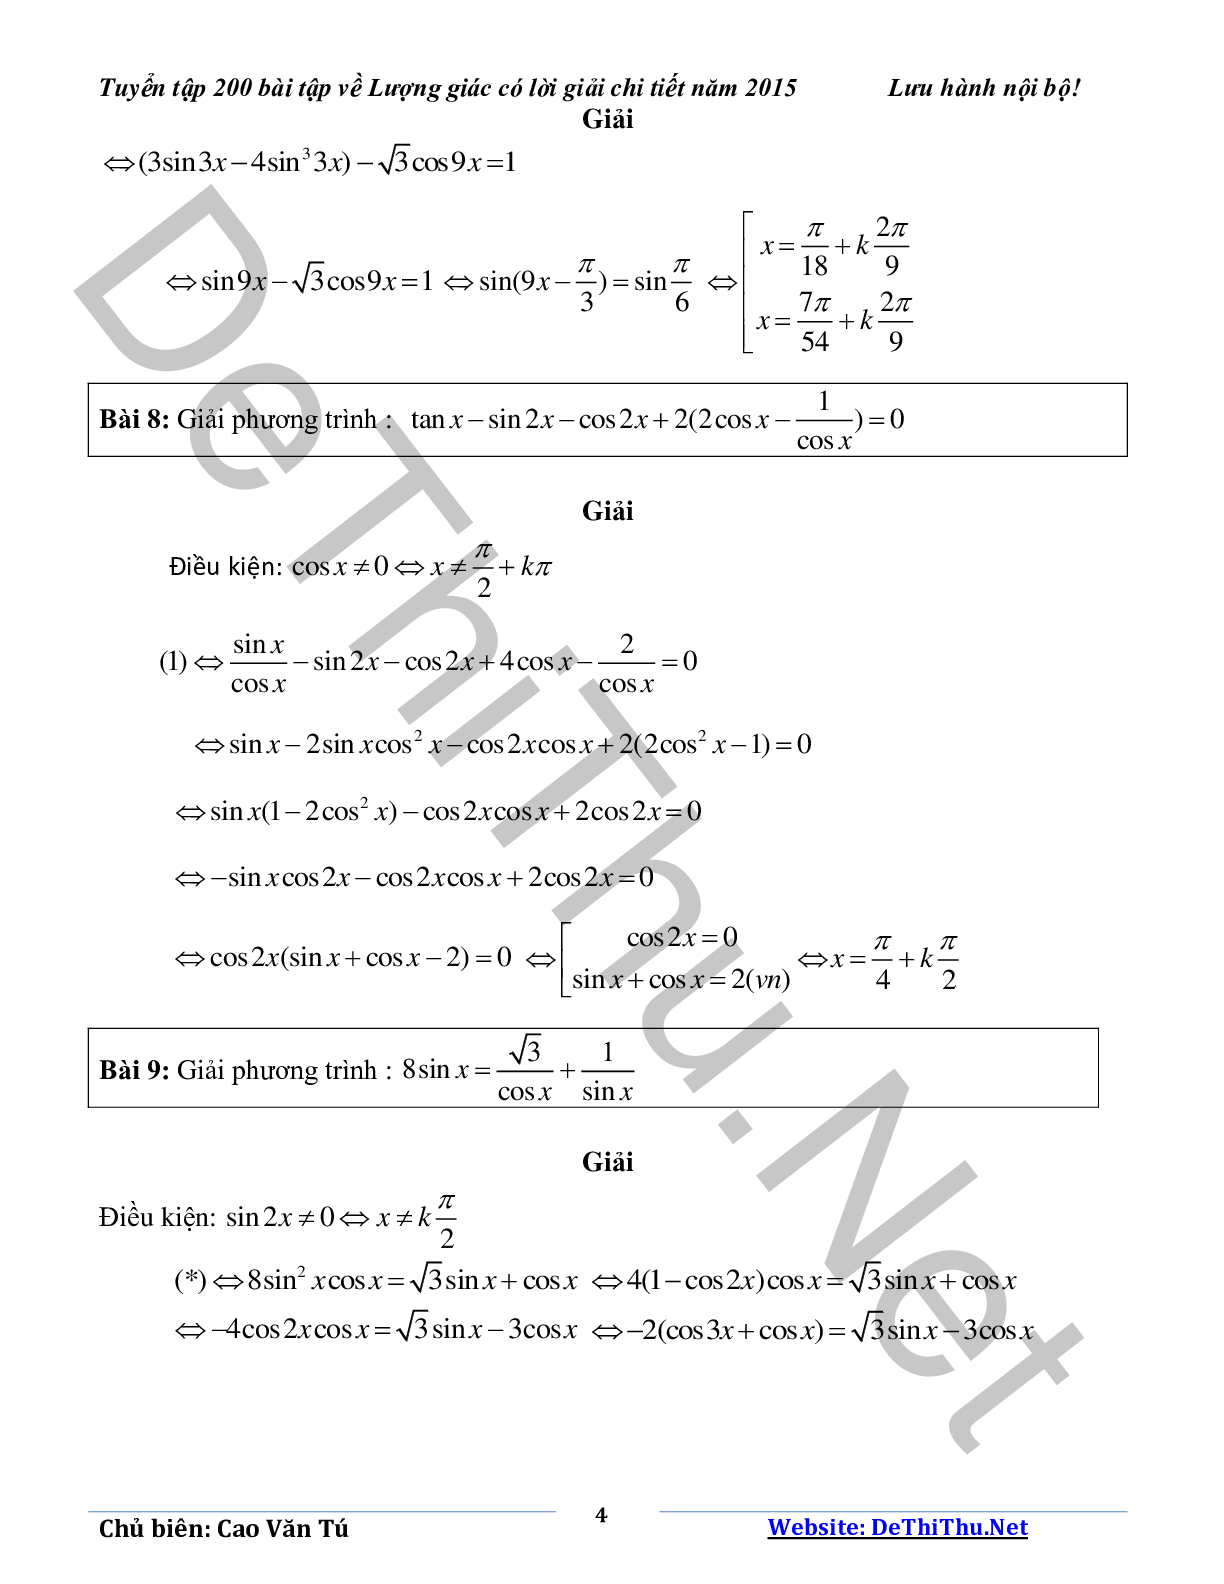 Tuyển tập 200 bài tập lượng giác có lời giải chi tiết năm 2015 (trang 4)